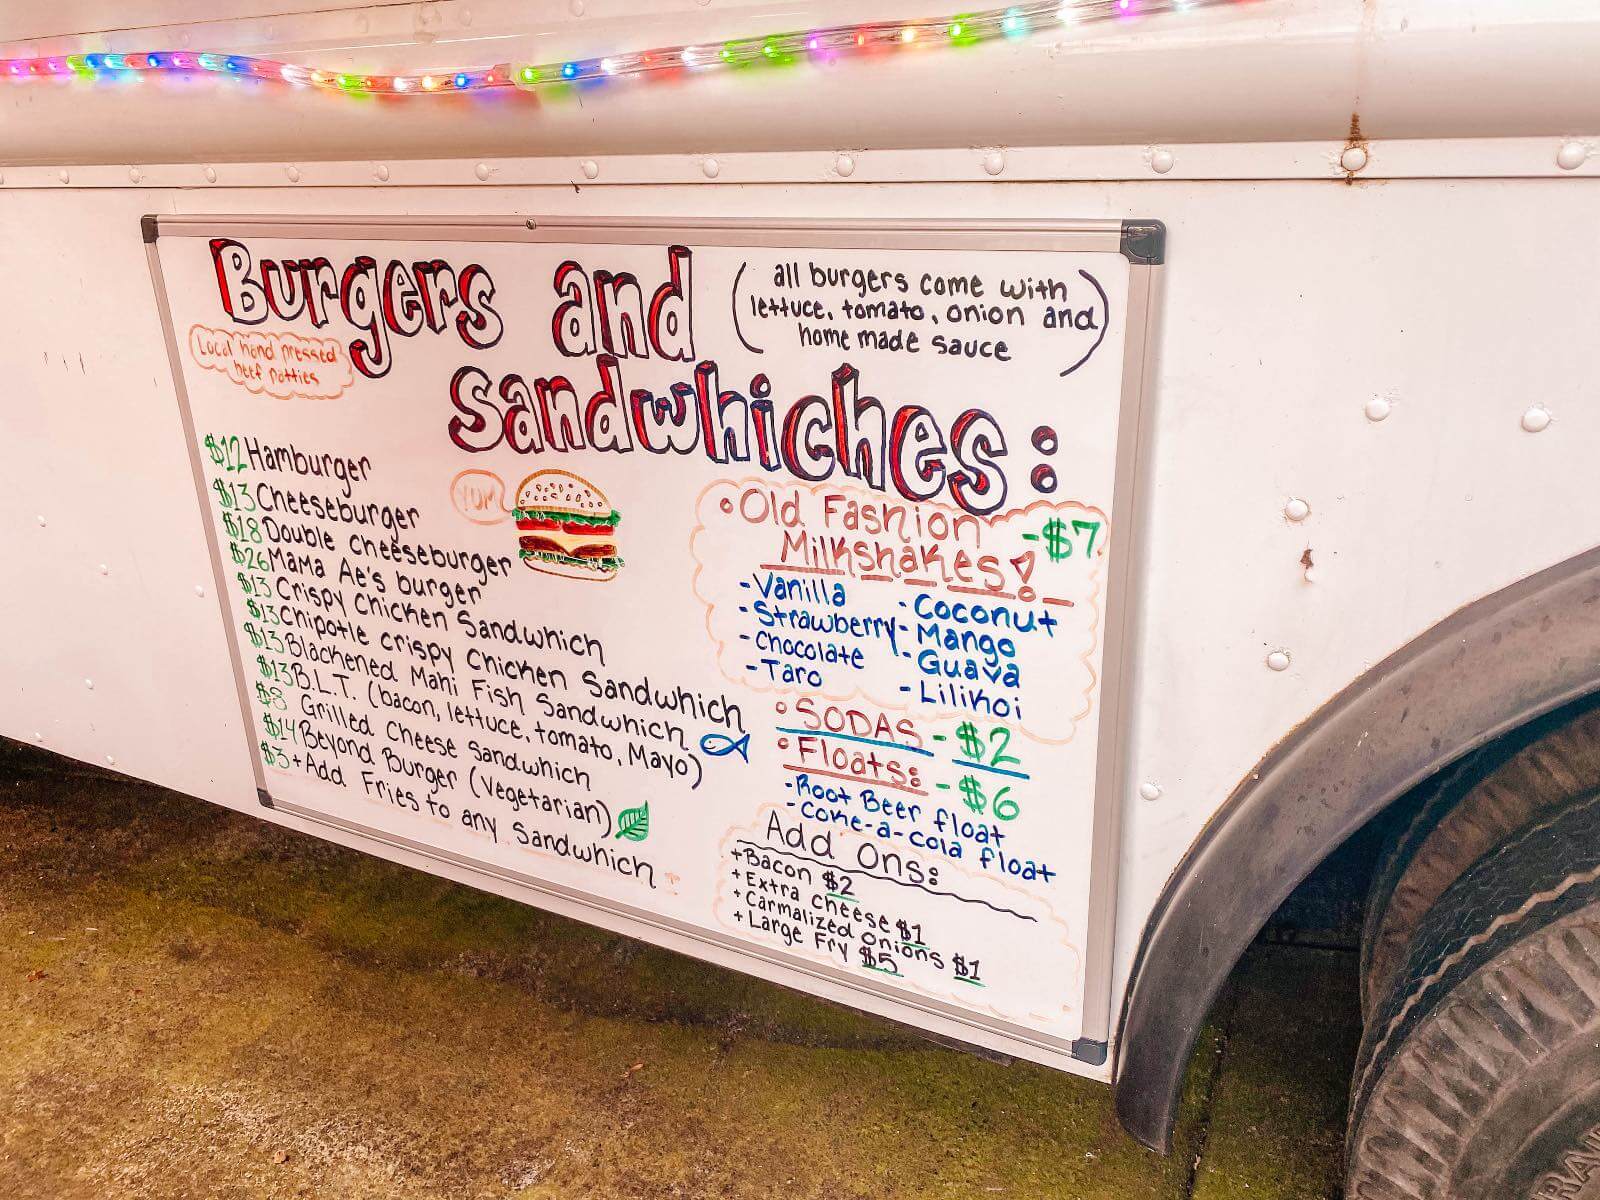 A menu at a food truck in Hana, Maui, HI